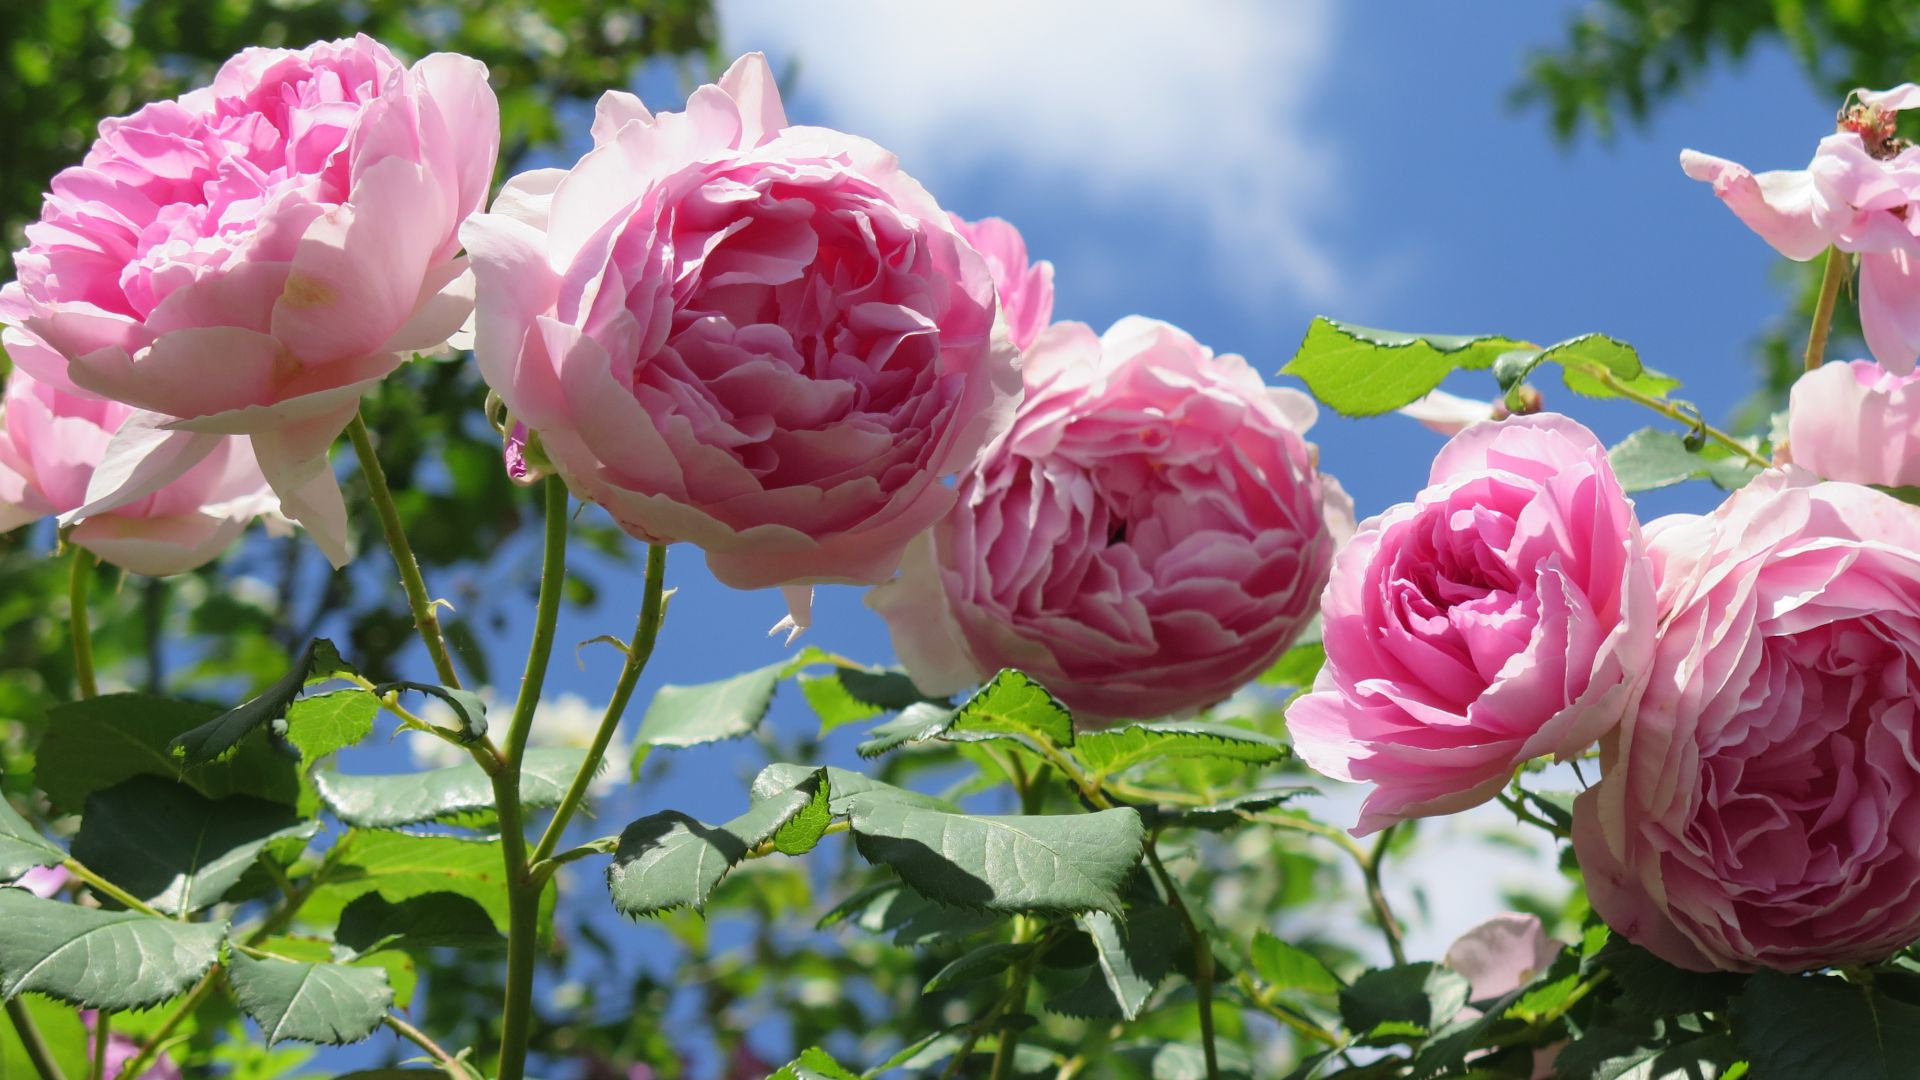 Hoa hồng là loài hoa đẹp và sang trọng được yêu thích trên toàn thế giới. Hãy chiêm ngưỡng bức ảnh về những bông hoa hồng tuyệt đẹp này và cảm nhận được sức cuốn hút của chúng.